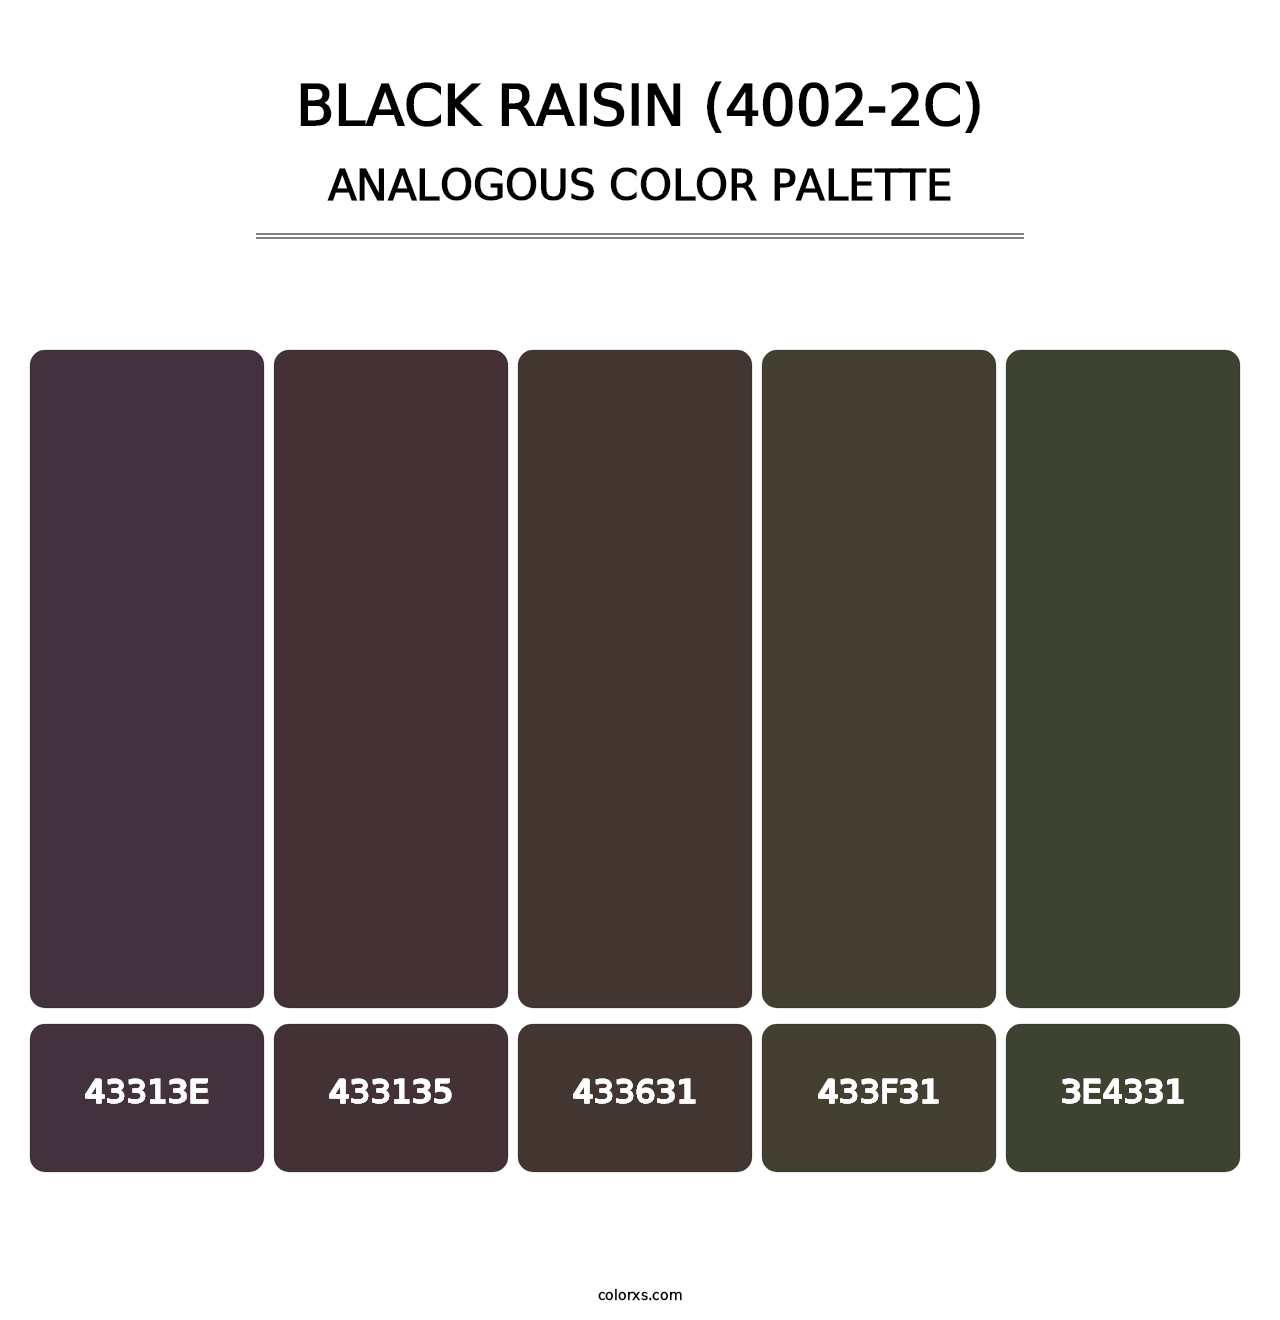 Black Raisin (4002-2C) - Analogous Color Palette